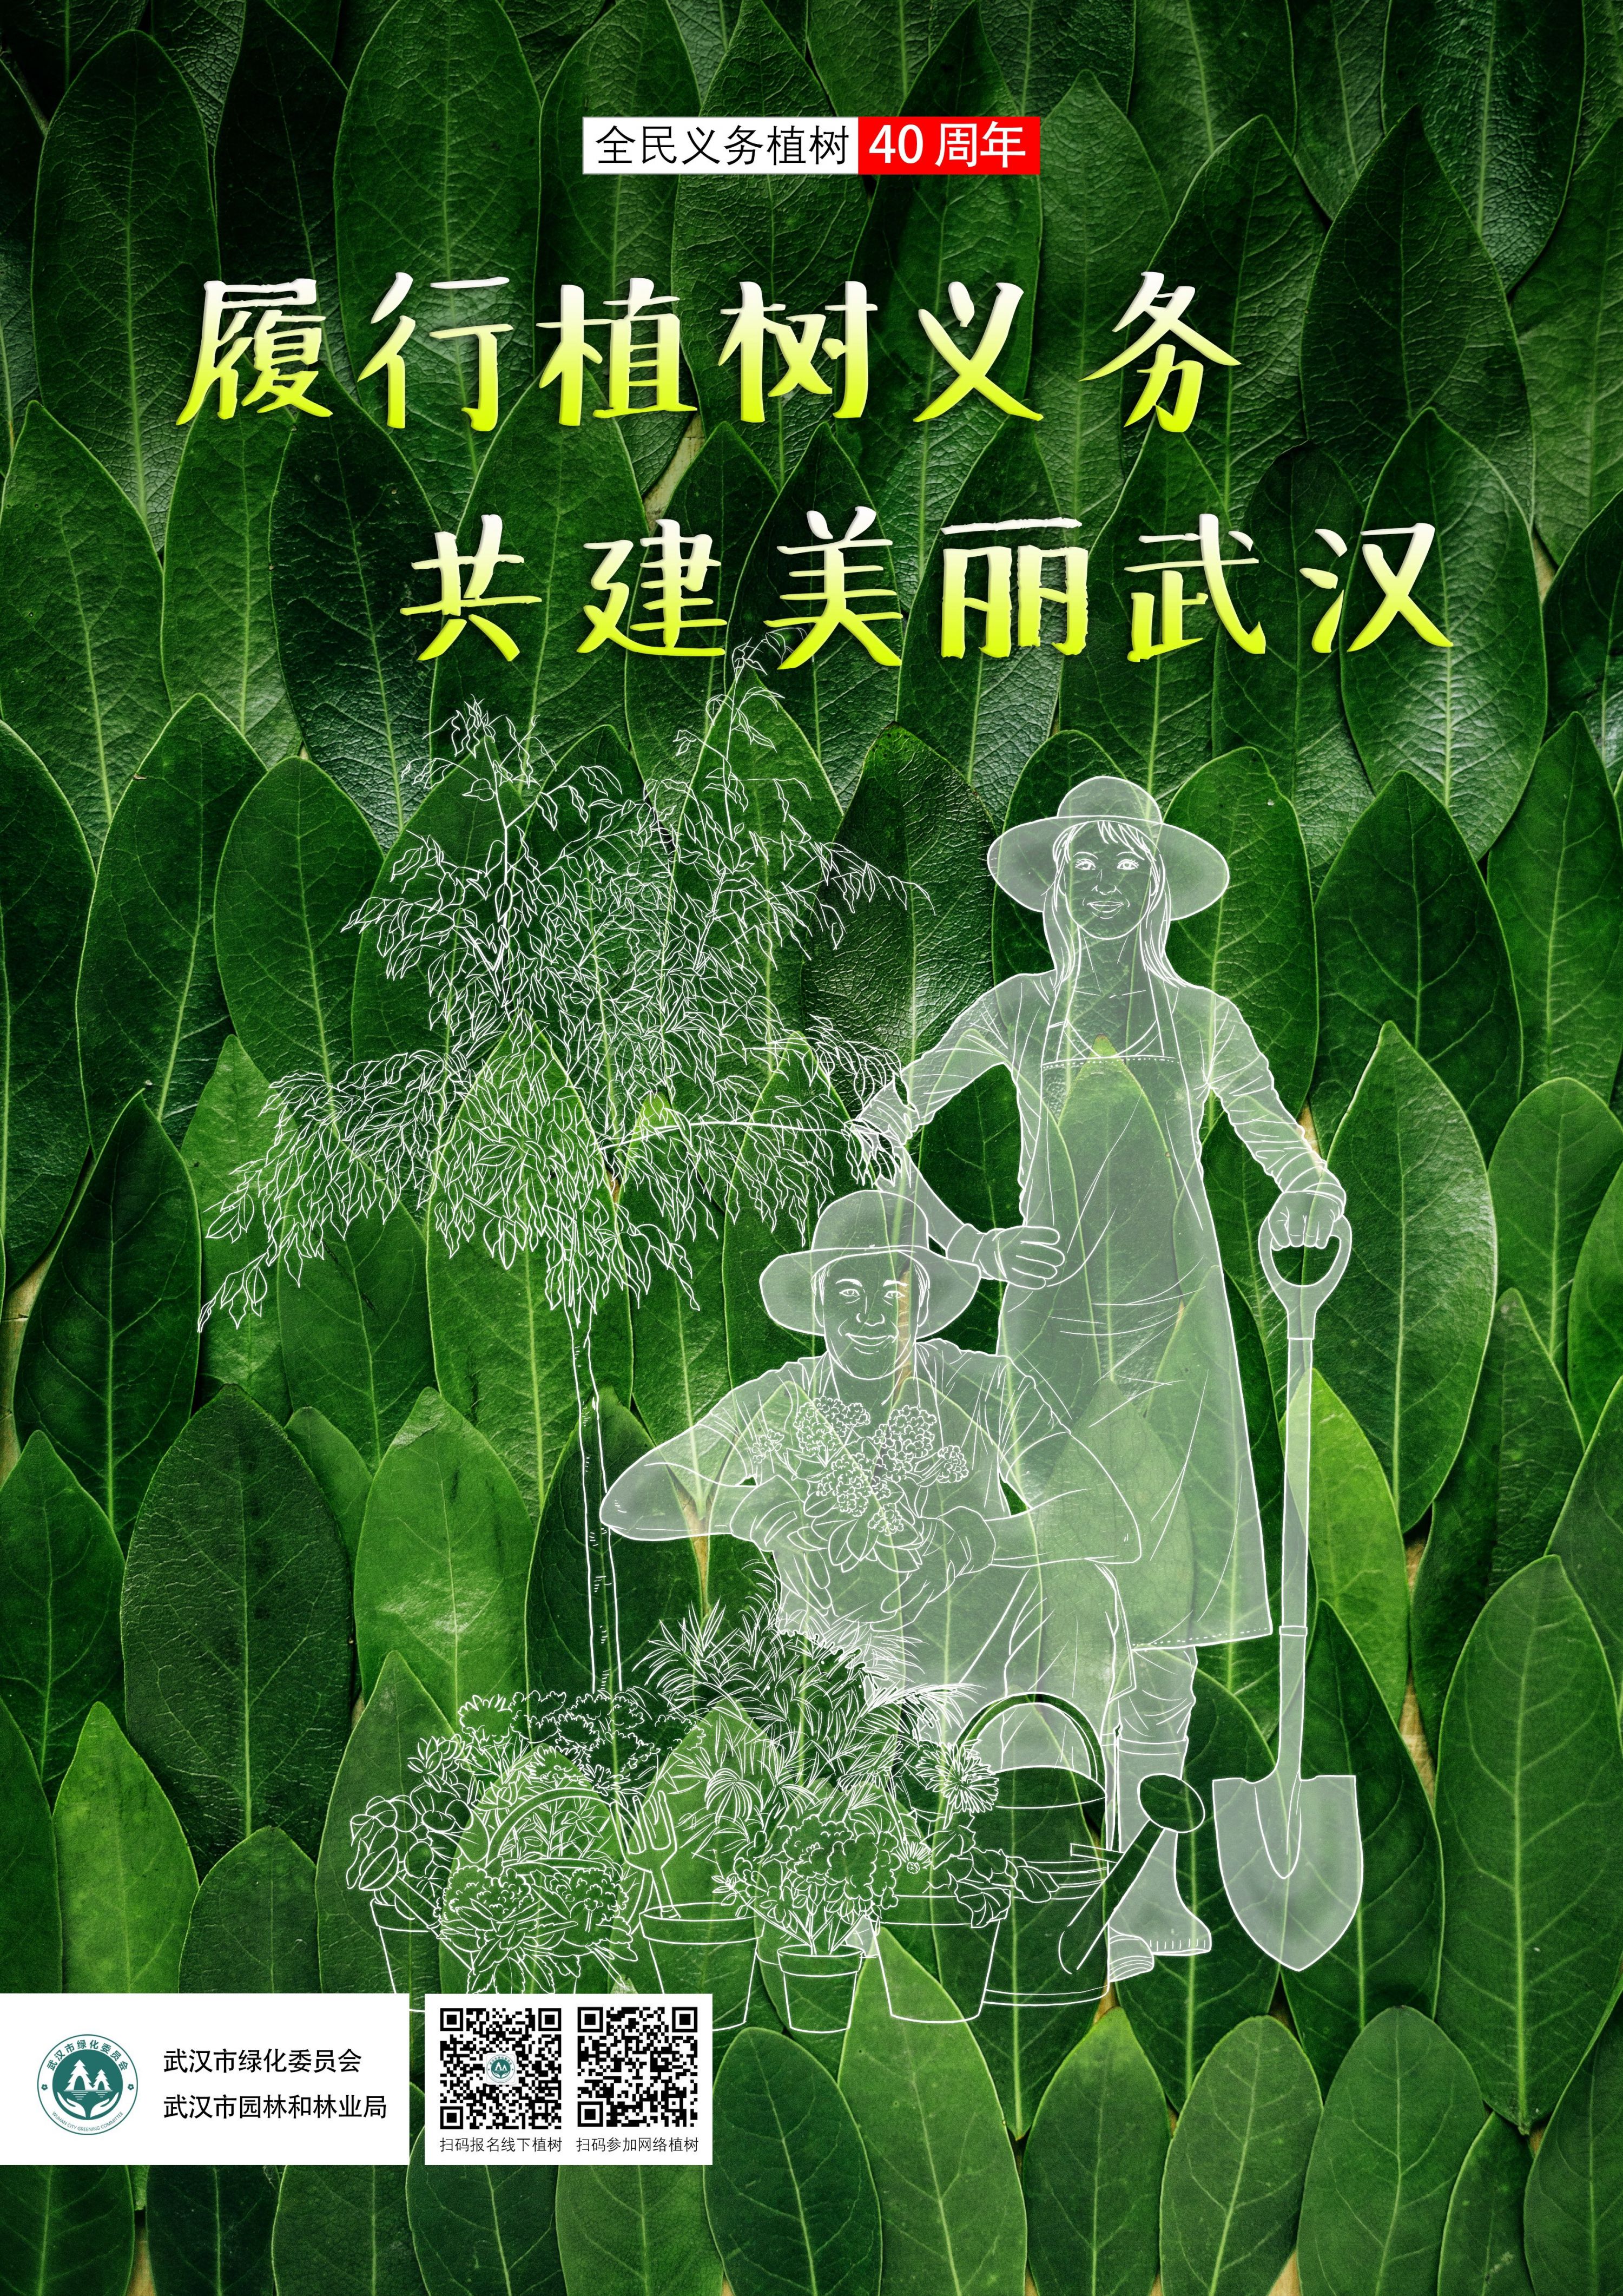 造林绿化,认种认养,志愿服务……8张海报展现义务植树的尽责形式